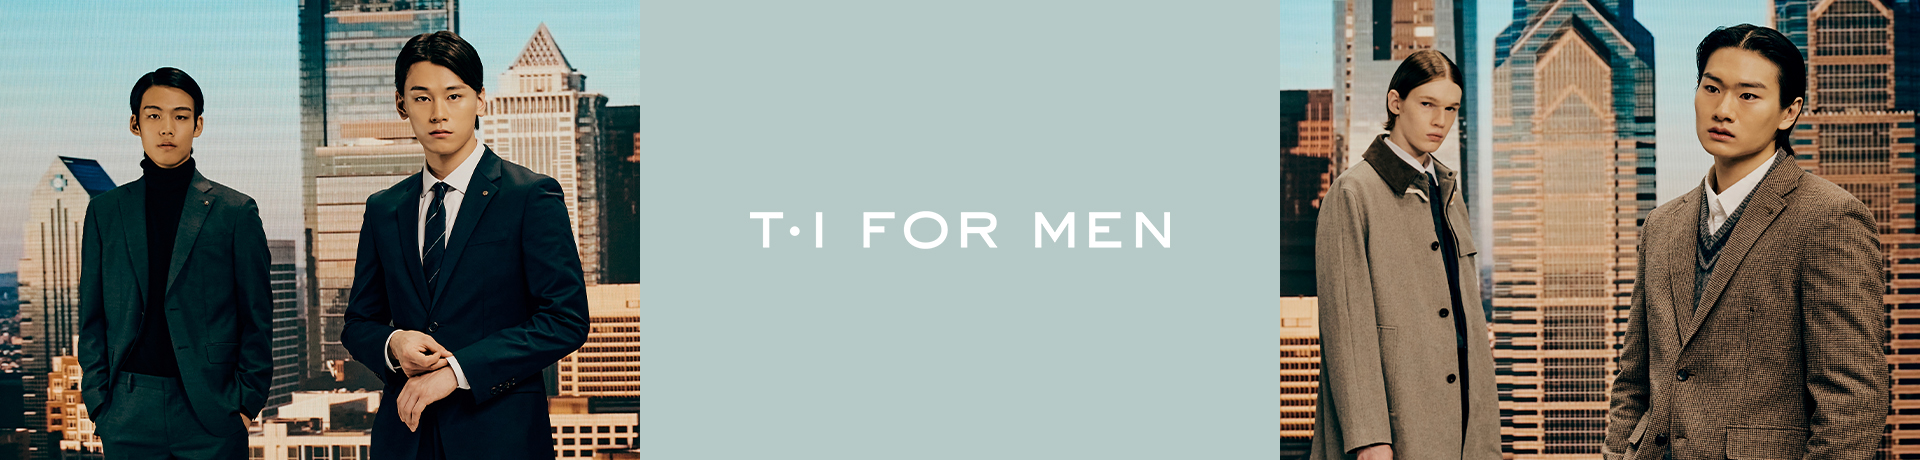 T.I FOR MEN